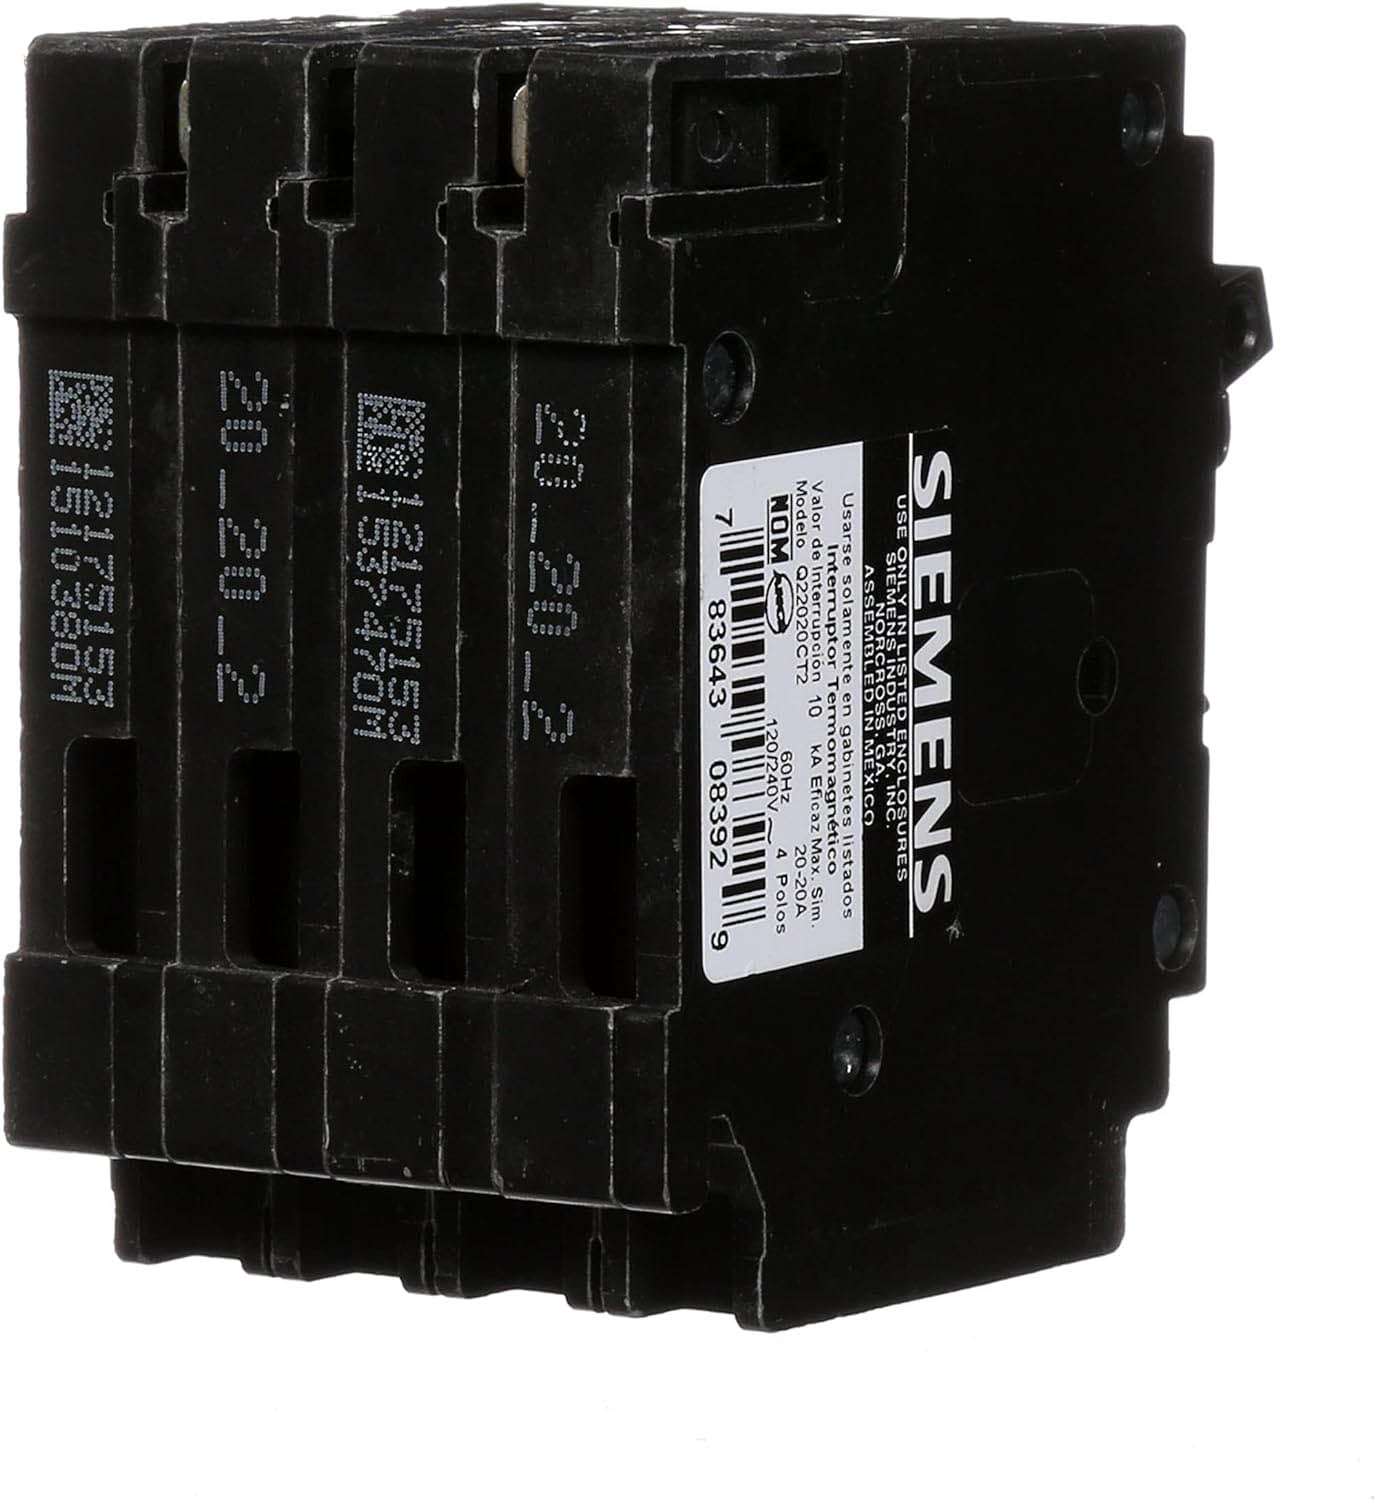 Q21515CT - Siemens - 15 Amp Quad Circuit Breaker